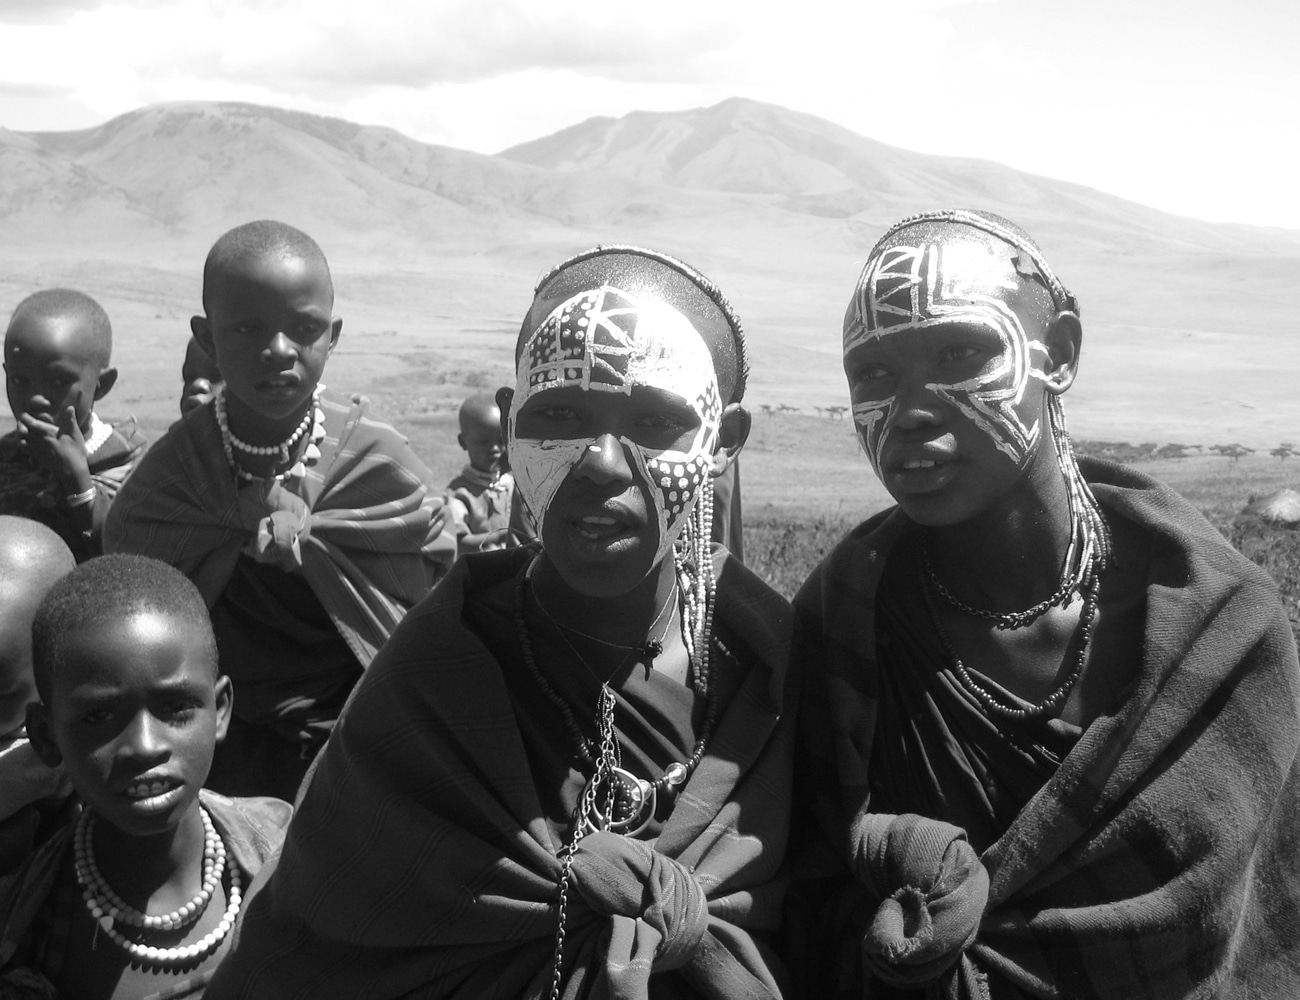 Chagga people of Tanzania